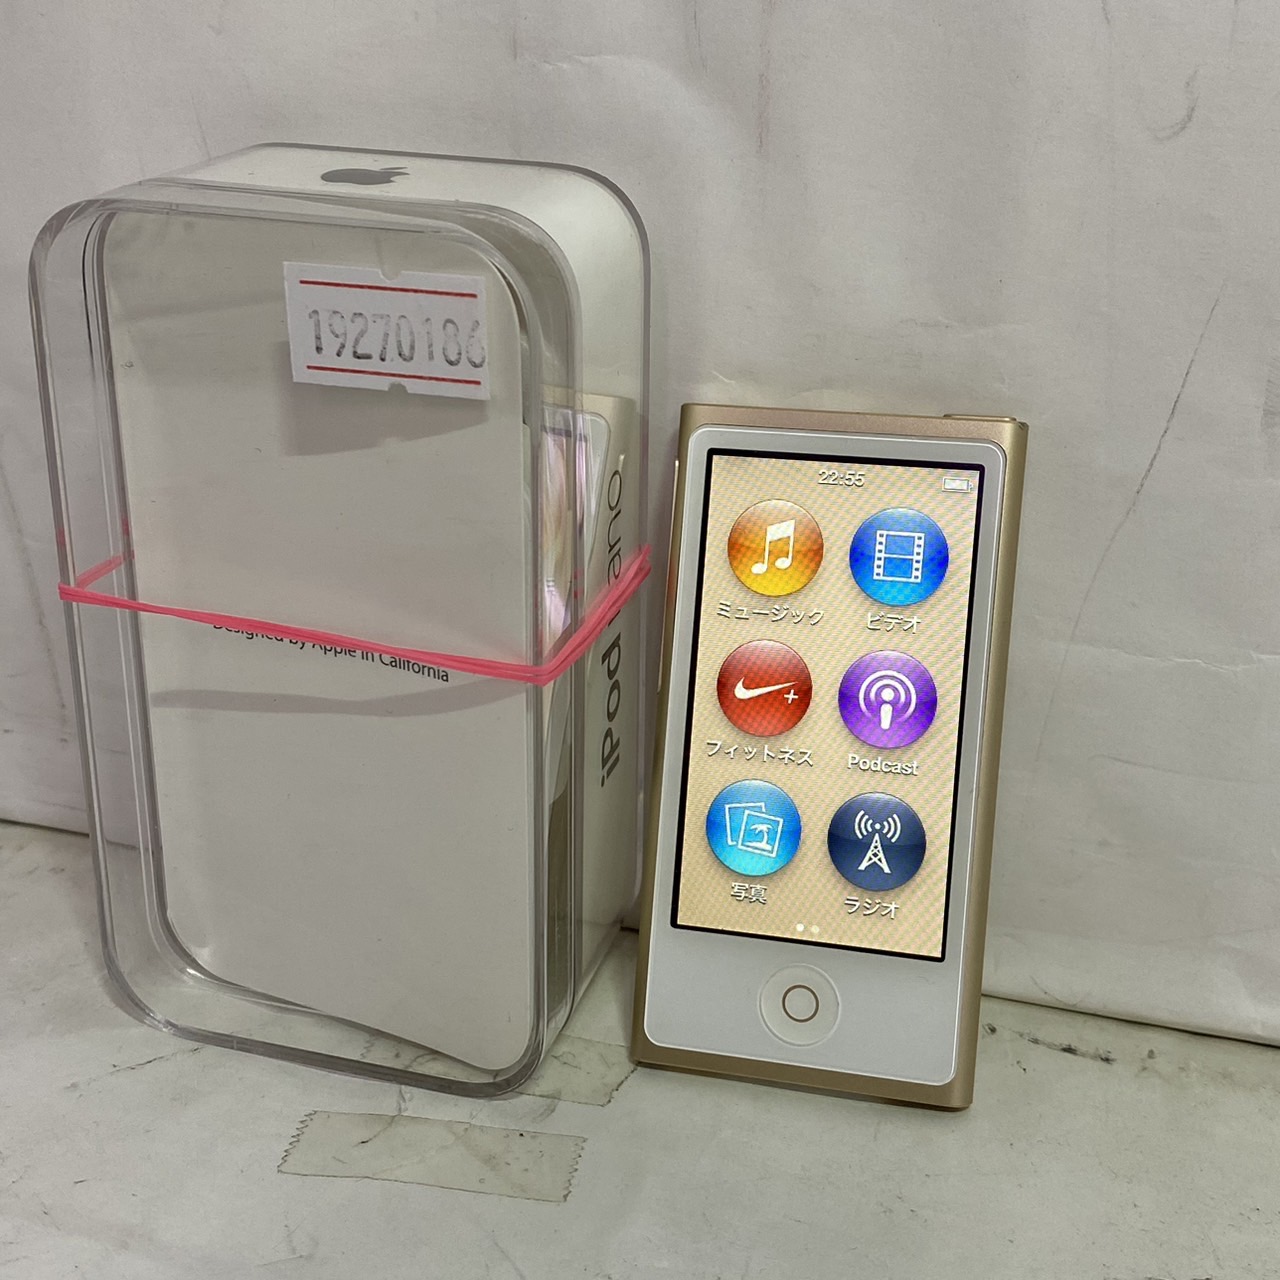 ポータブルプレーヤーApple iPod nano 第7世代 16GB